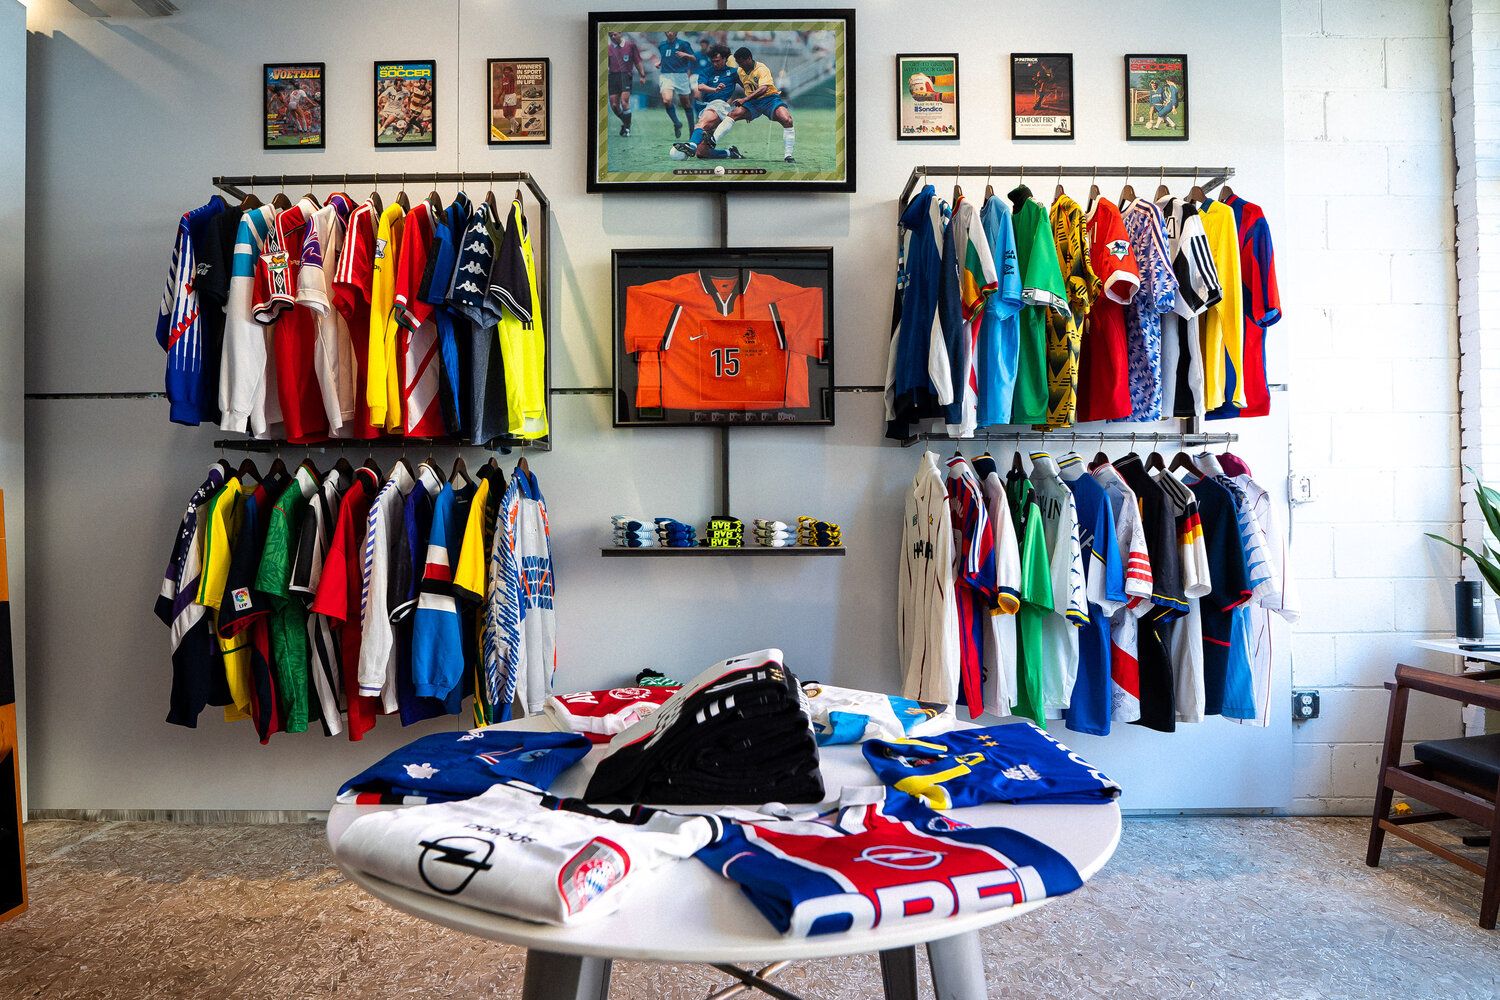 Retro Football Shirt Collection, Shop